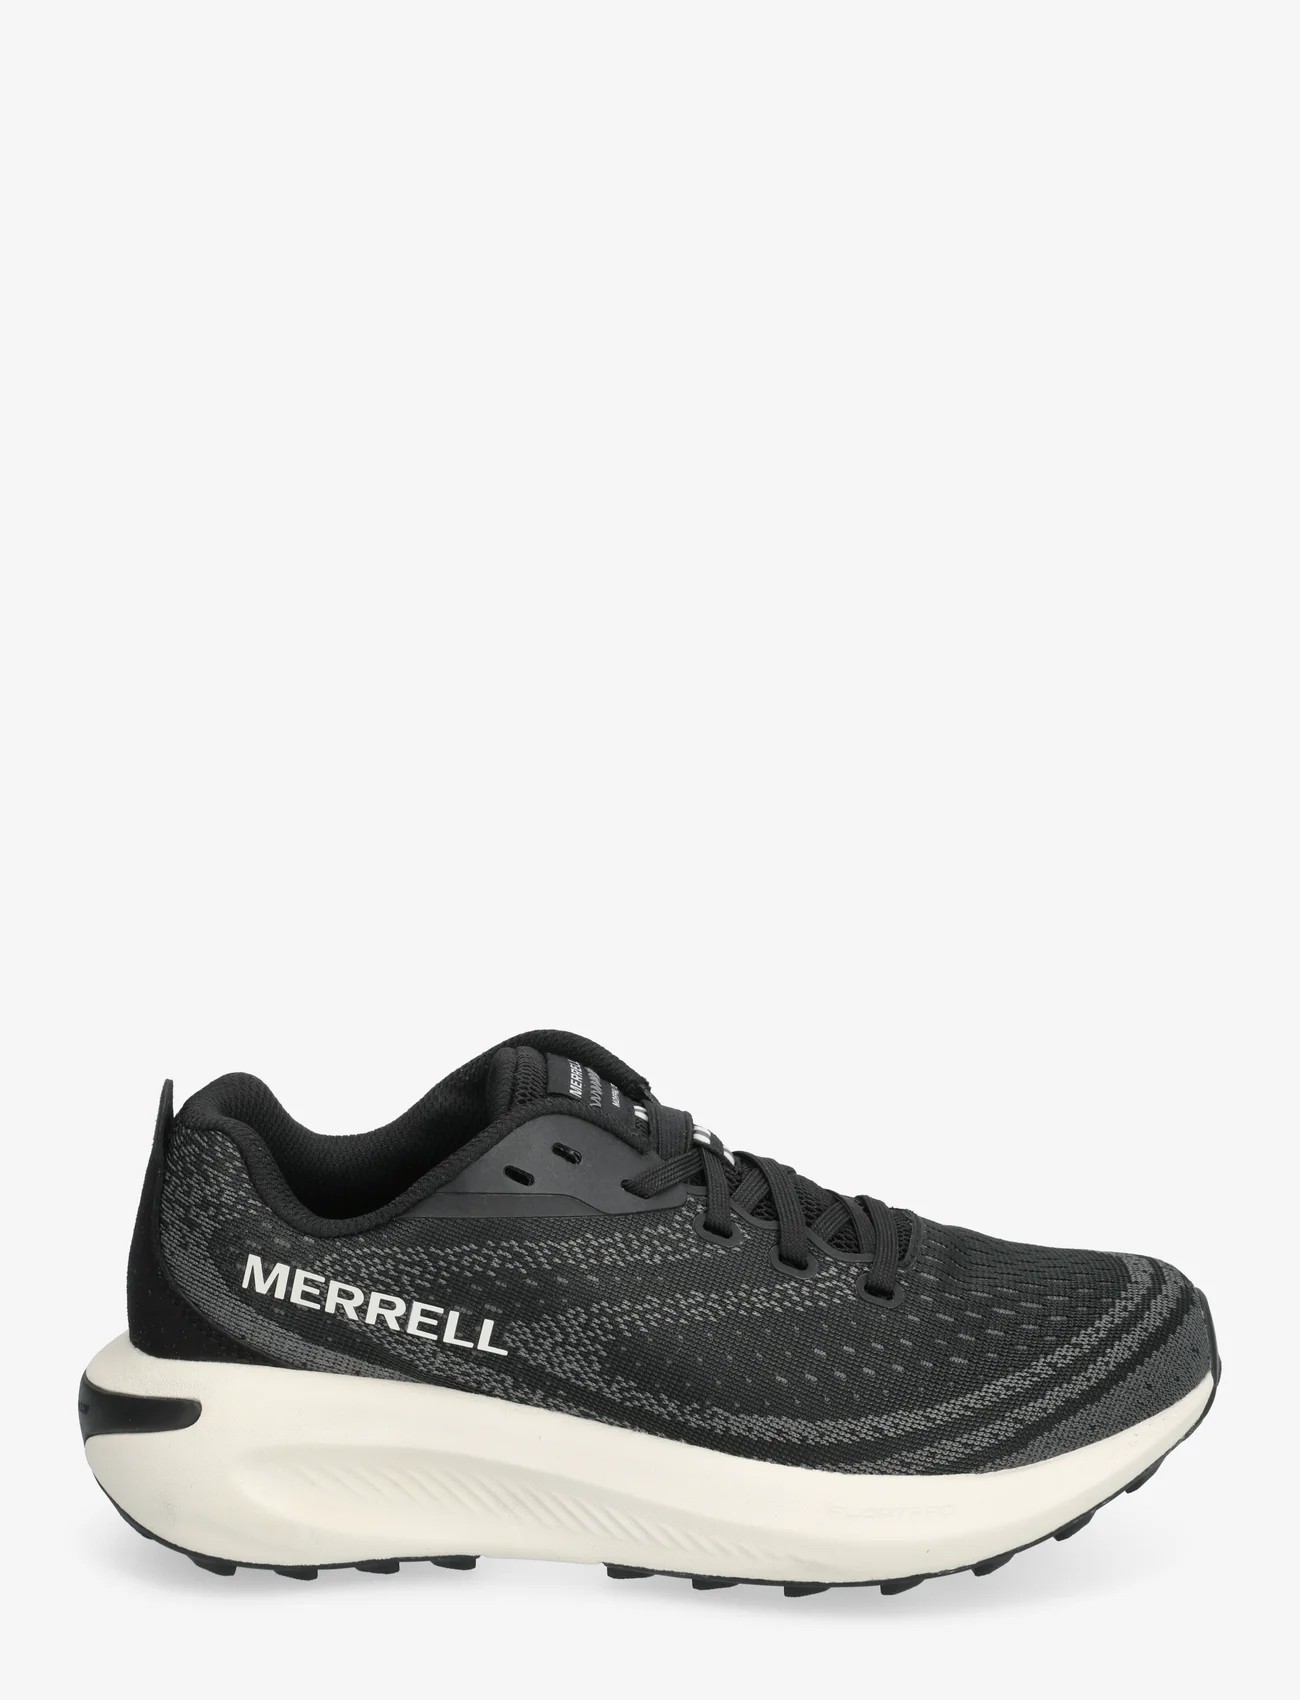 Merrell - Women's Morphlite - Black/White - loopschoenen - black/white - 1